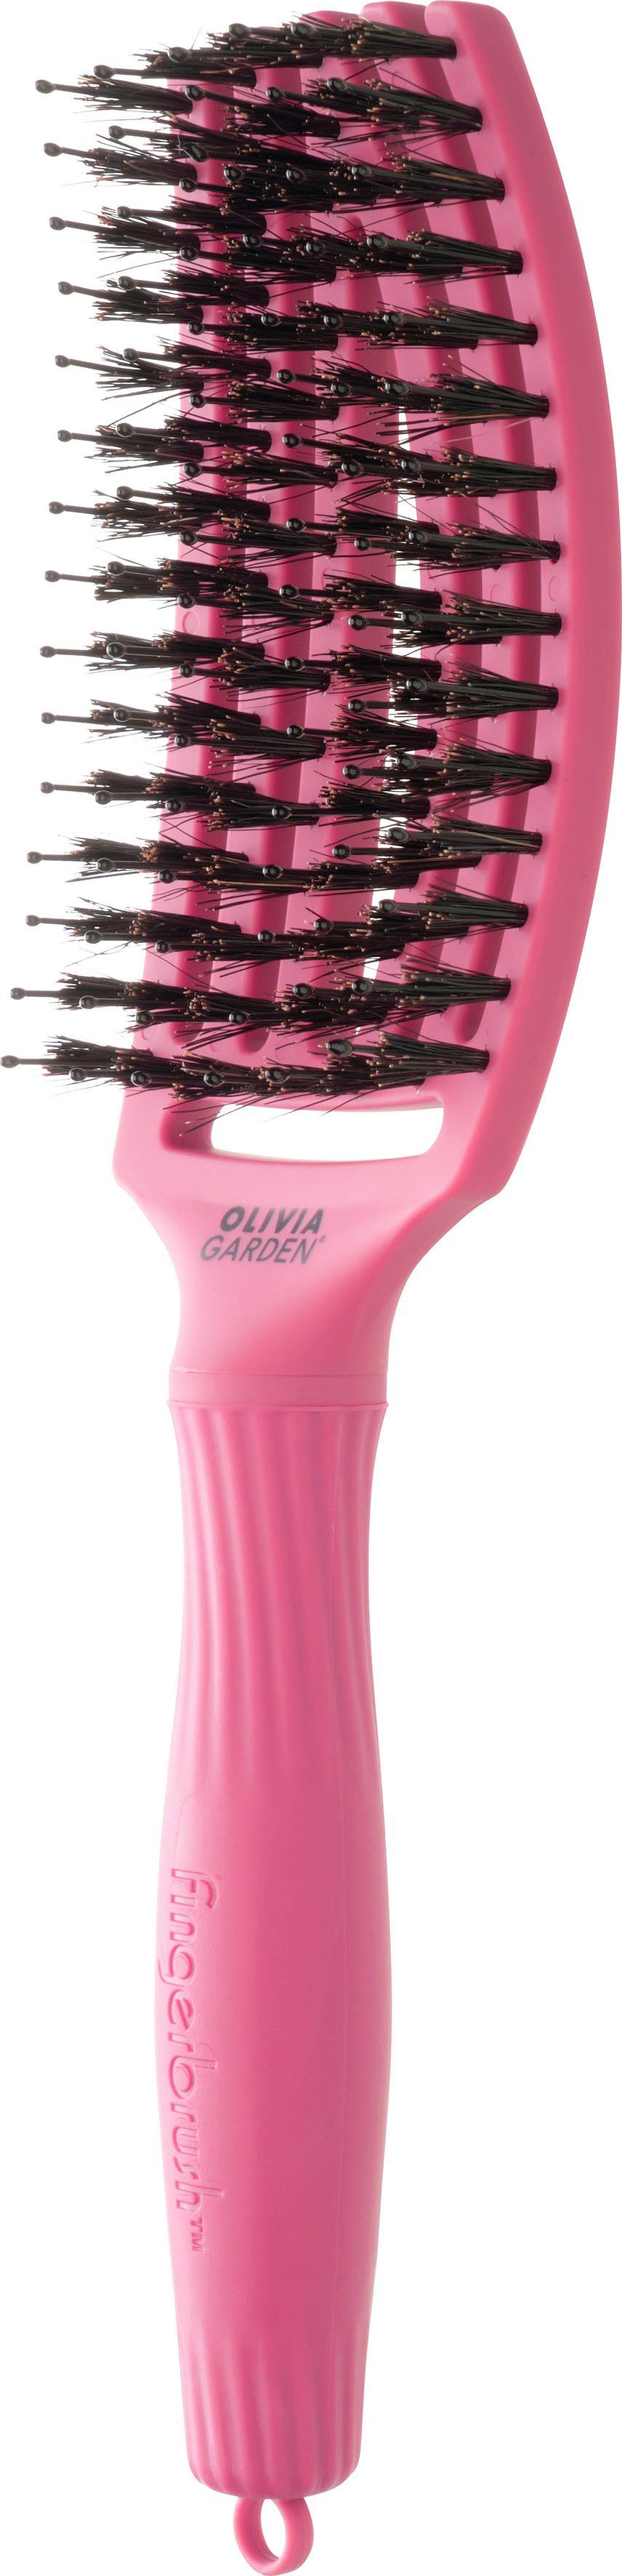 zum Combo GARDEN und Medium, Kopfhautmassage Entwirren zur Ideal Glätten, Fingerbrush OLIVIA Haarbürste